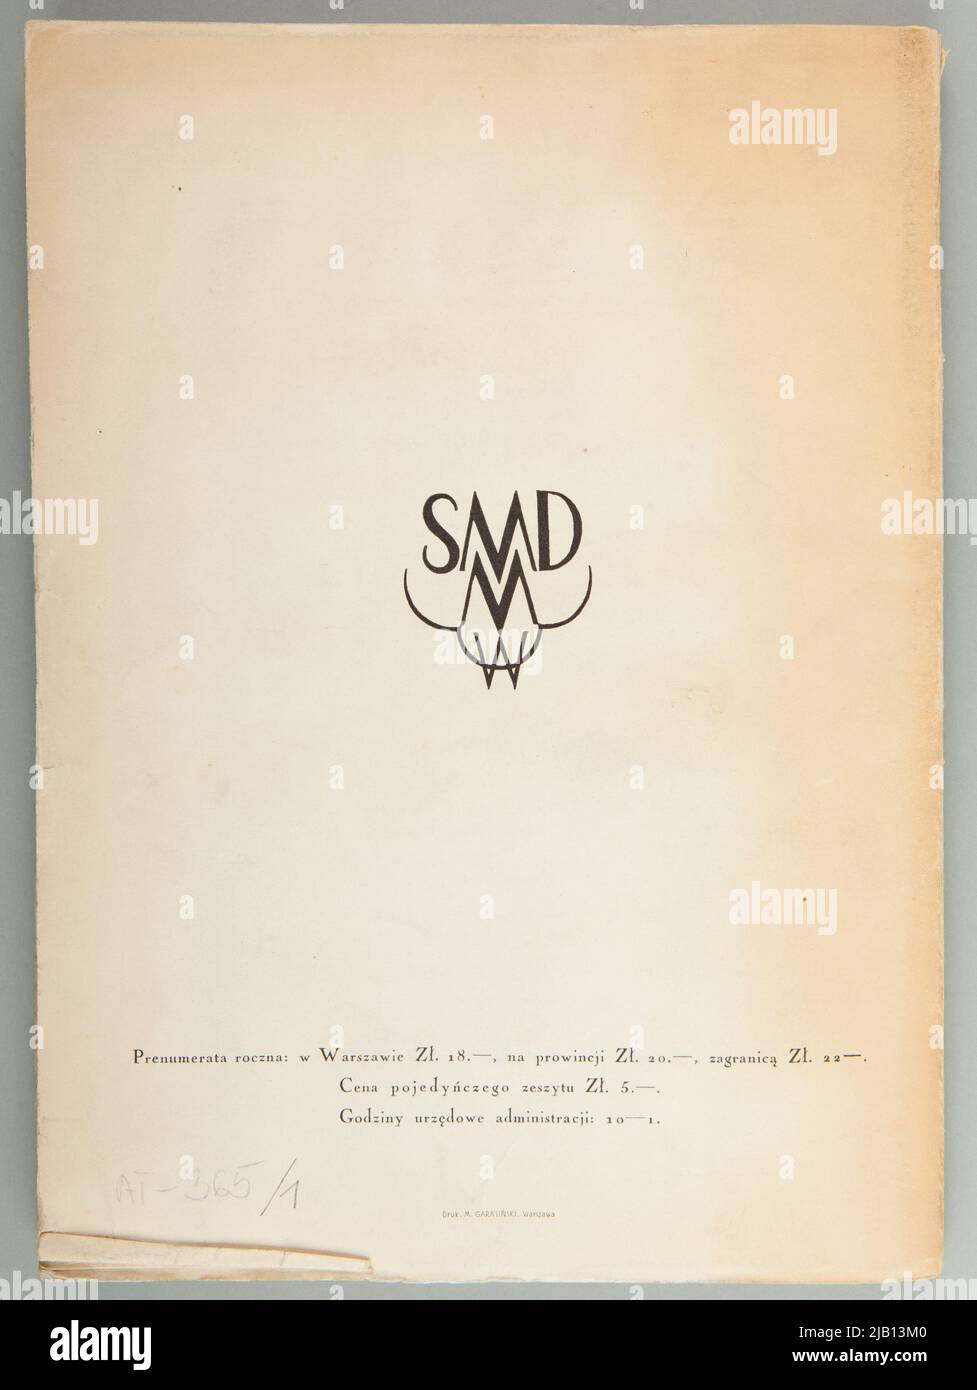 Magazin Kwartalnik Muzyczny Nr. 8 (07,1930) mit Artikeln im Bereich Musikgeschichte die Autoren sind anders Stockfoto